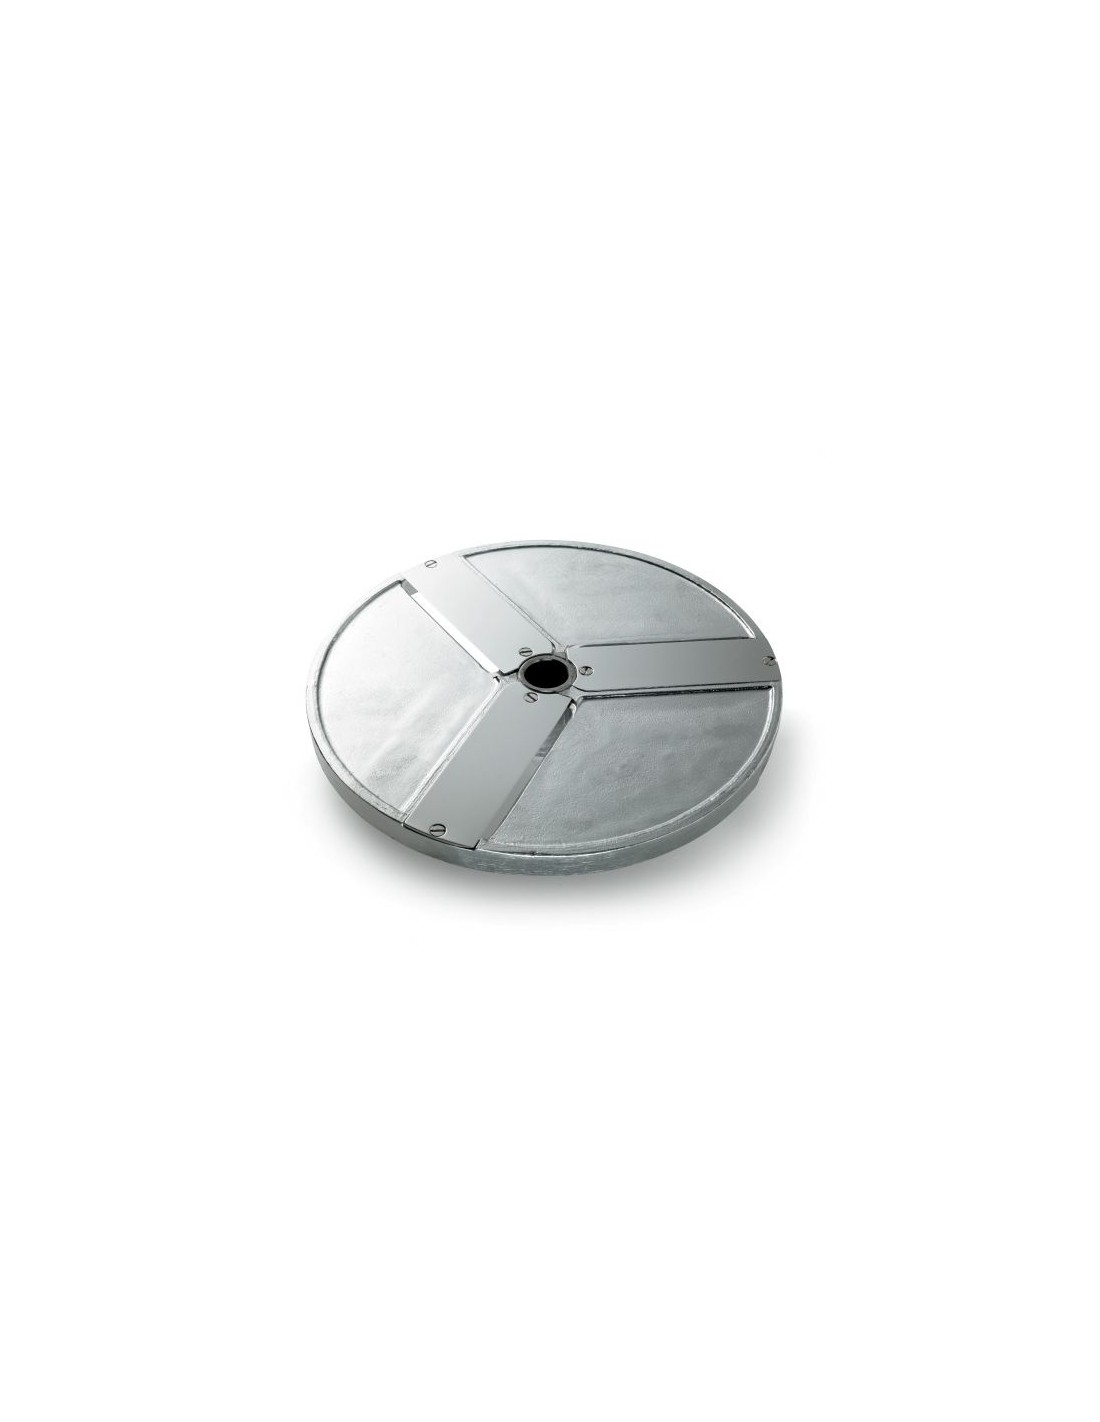 Disco per fette - Diametro mm 205 - Spessore taglio mm 30